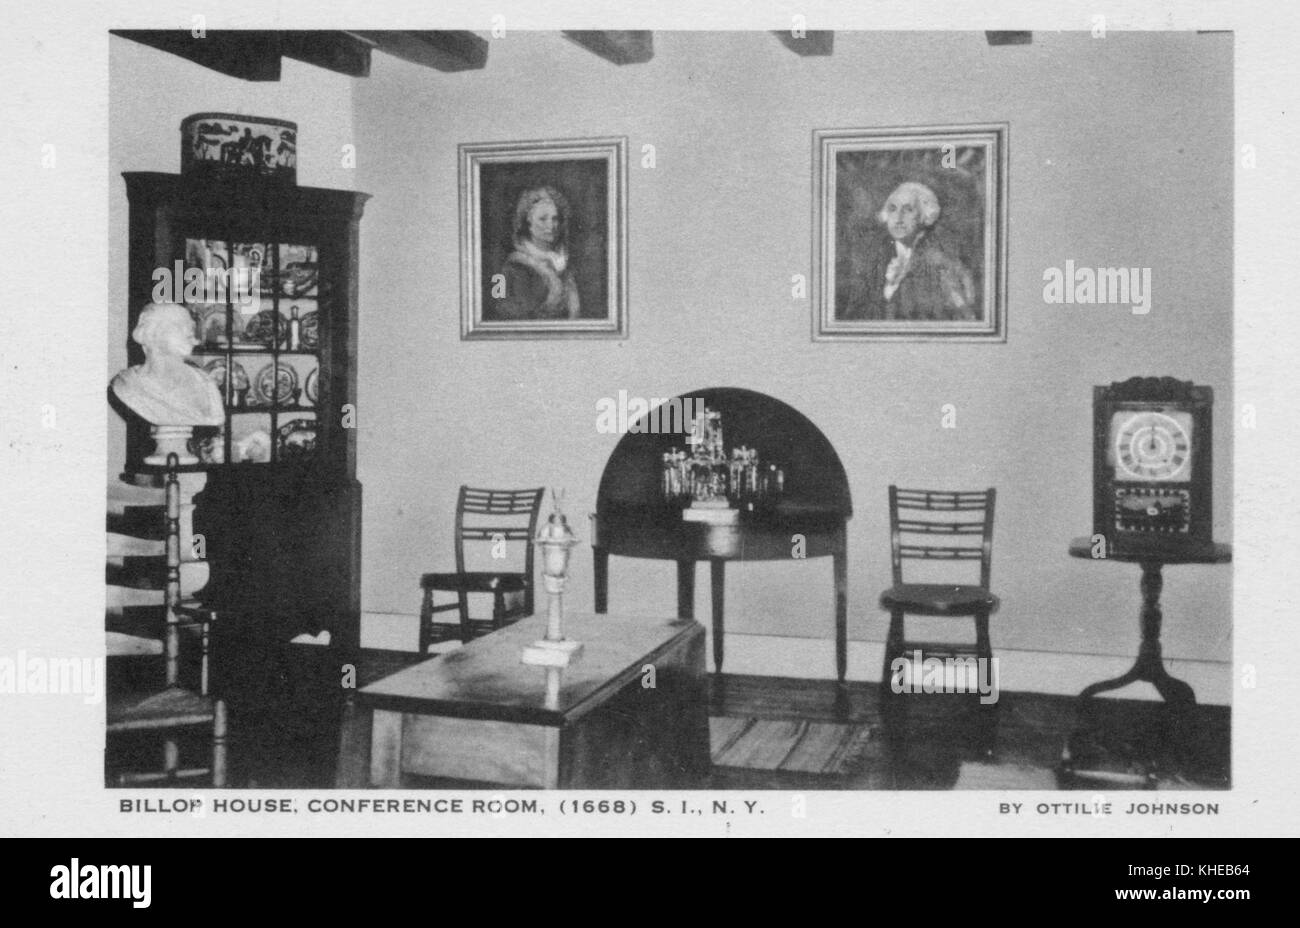 Une vieille carte postale de la salle de conférence de Billip House, montrant un mur suspendu avec deux portraits encadrés d'un homme, deux chaises fixées par le mur un juste en dessous de chaque portrait, une table latérale en demi-lune entre les chaises, Un buste d'homme monté sur le côté gauche de la pièce, une armoire en bois pleine de chine debout sur le mur gauche, et une table basse rectangulaire fixée au centre de la pièce, Staten Island, New York, 1900. De la bibliothèque publique de New York. Banque D'Images